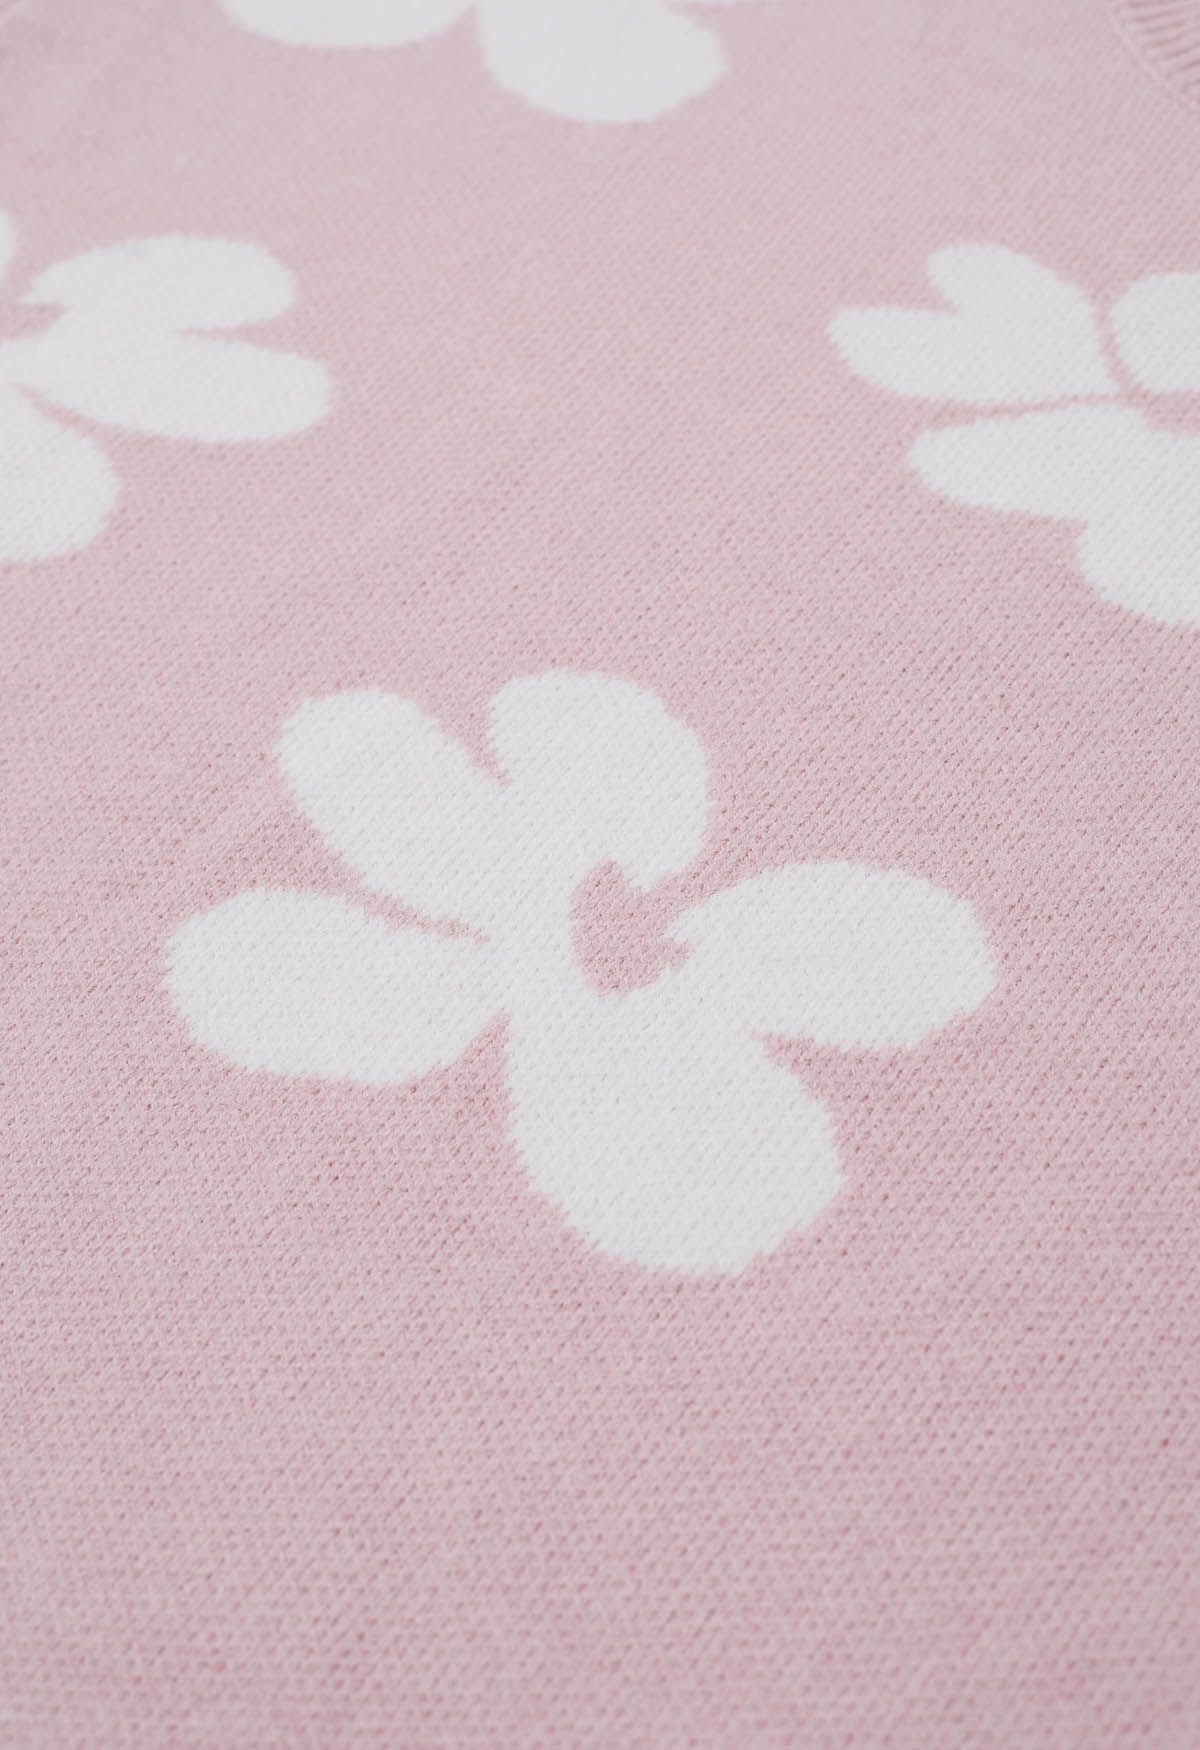 Contrast Flower Pattern Knit Sweater in Pink